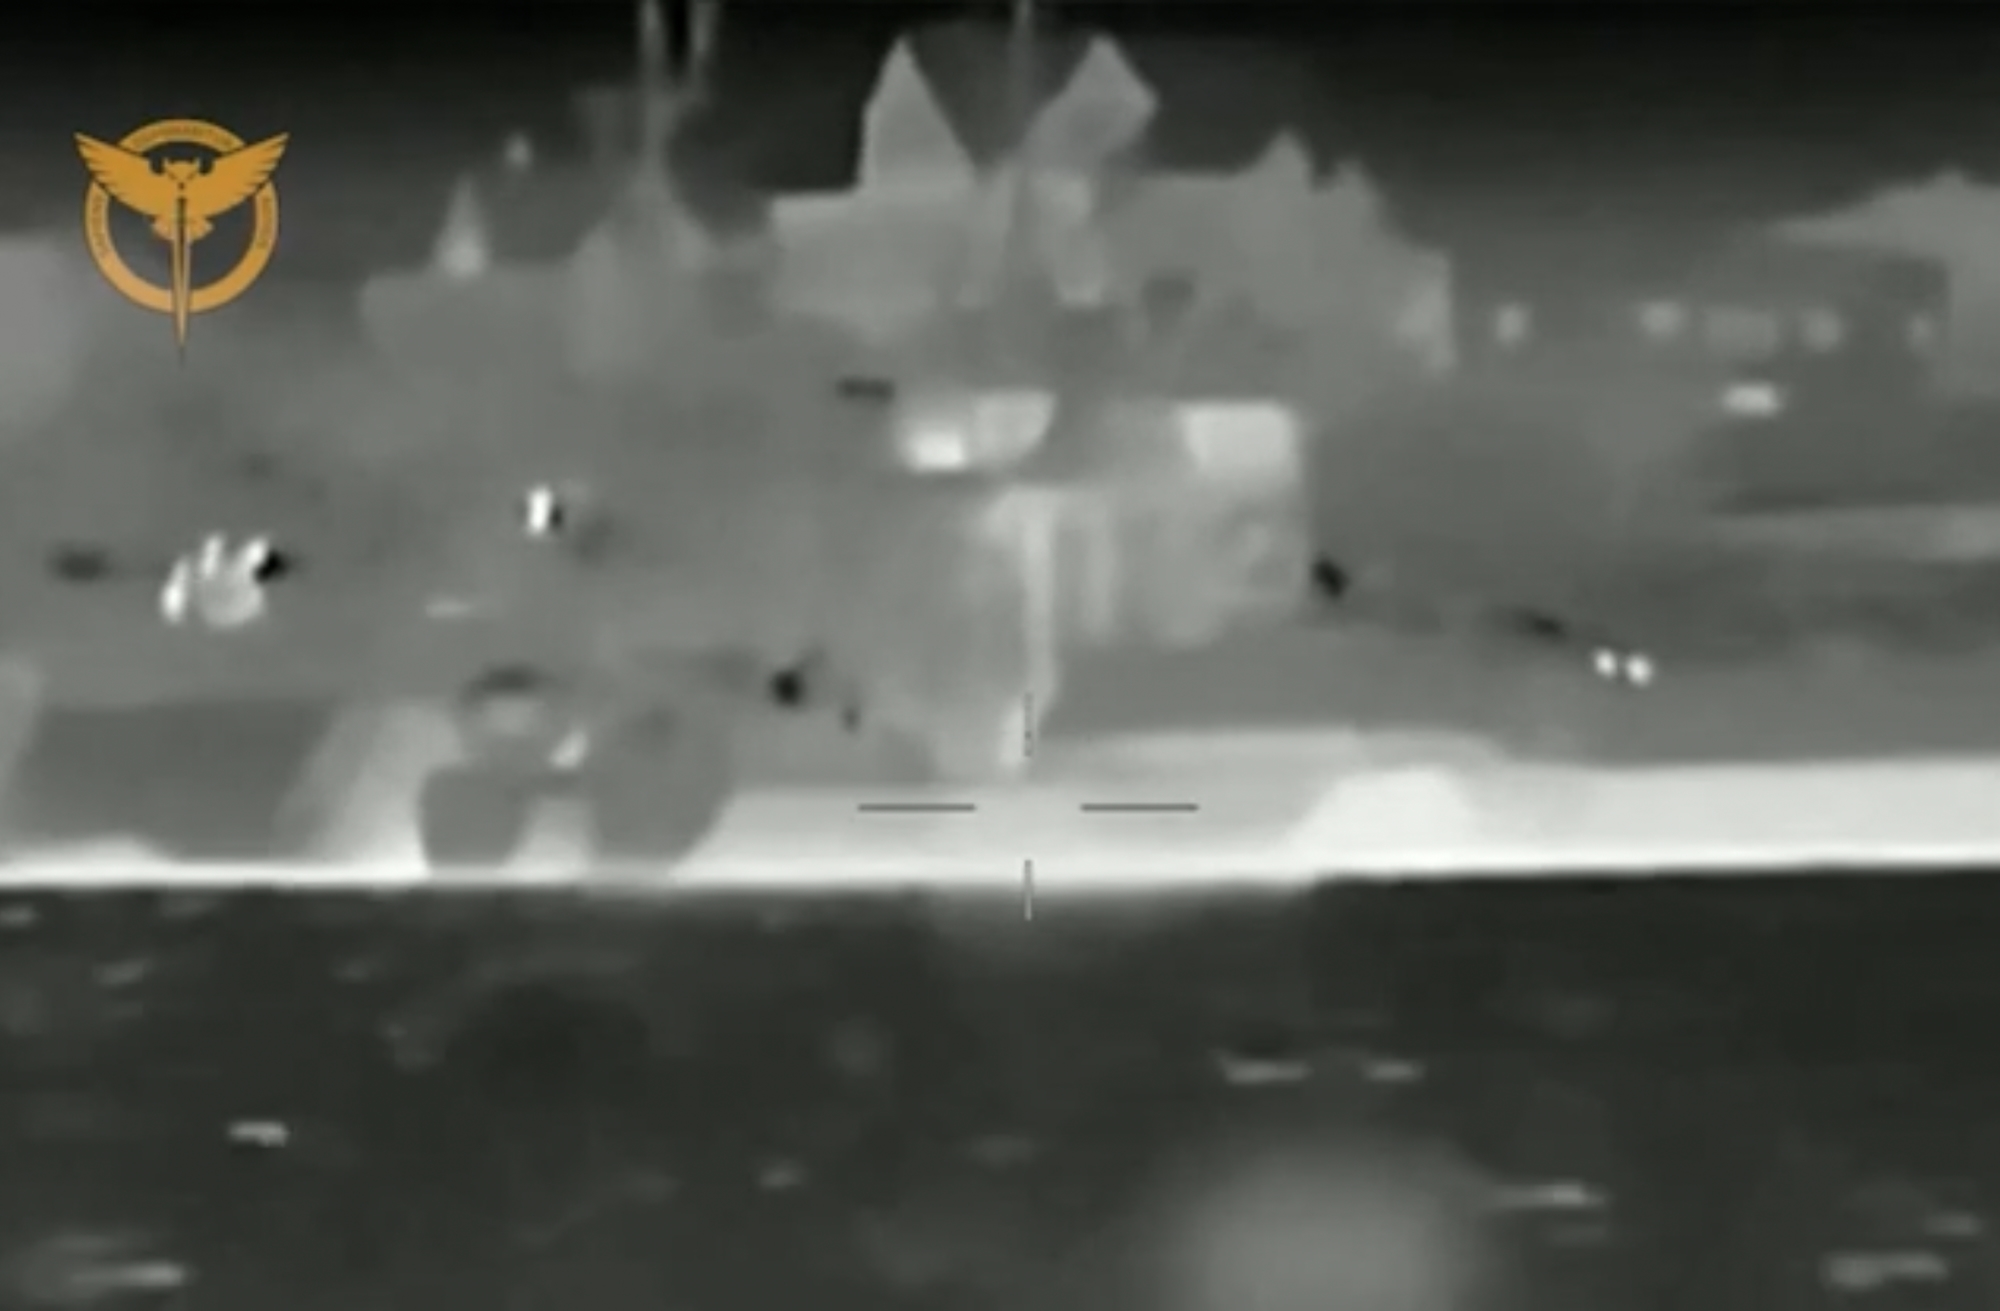 GUR-Sondereinsatz: Die Ukraine hat mit Hilfe von Marinedrohnen mehrere Landungsschiffe der Schwarzmeerflotte der RF auf der Krim beschossen (Video)